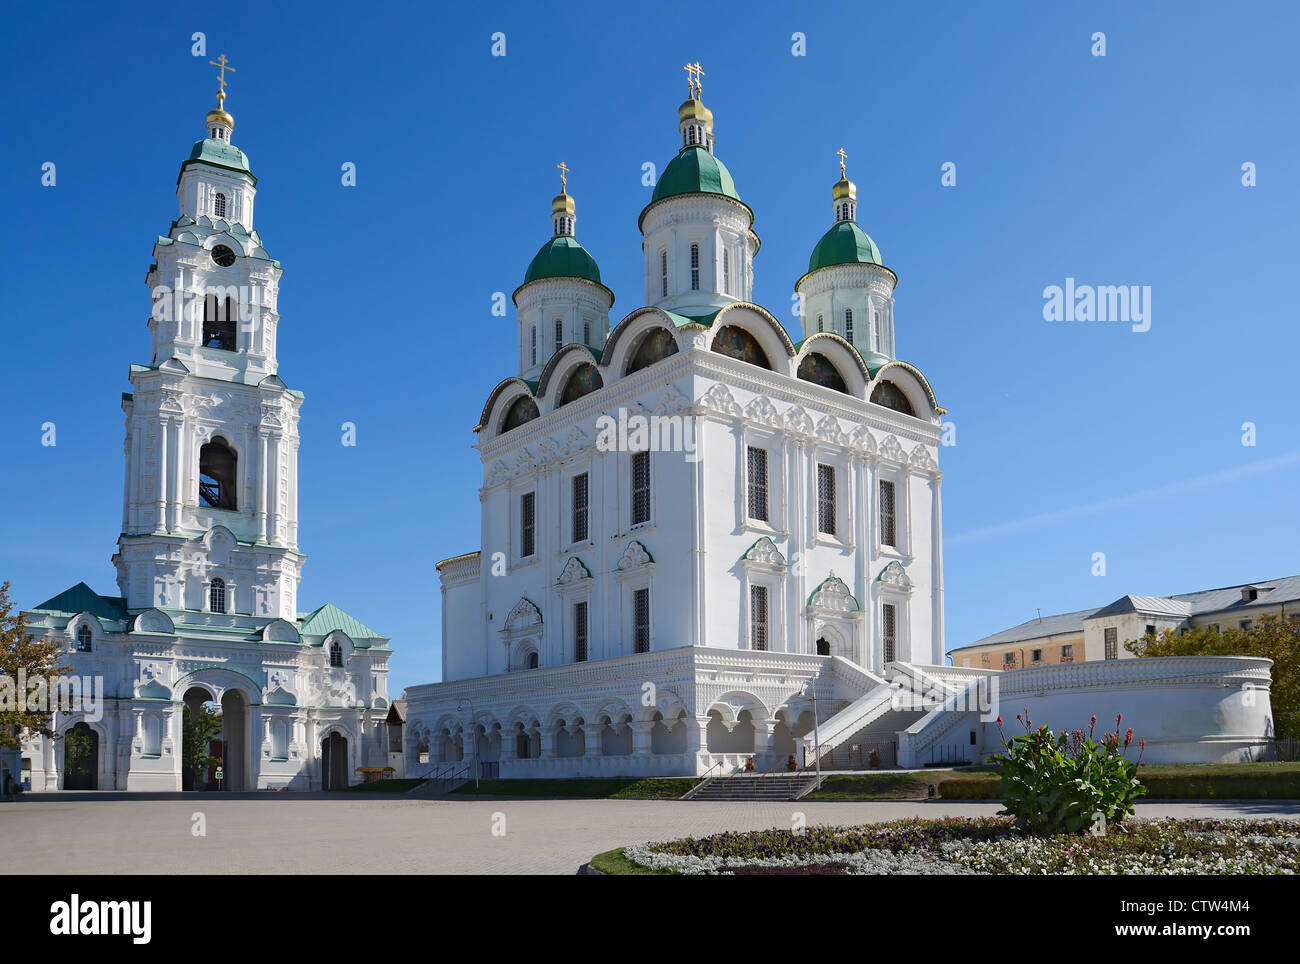 La cathédrale Uspensky et clocher du Kremlin à Astrakhan, Russie Banque D'Images